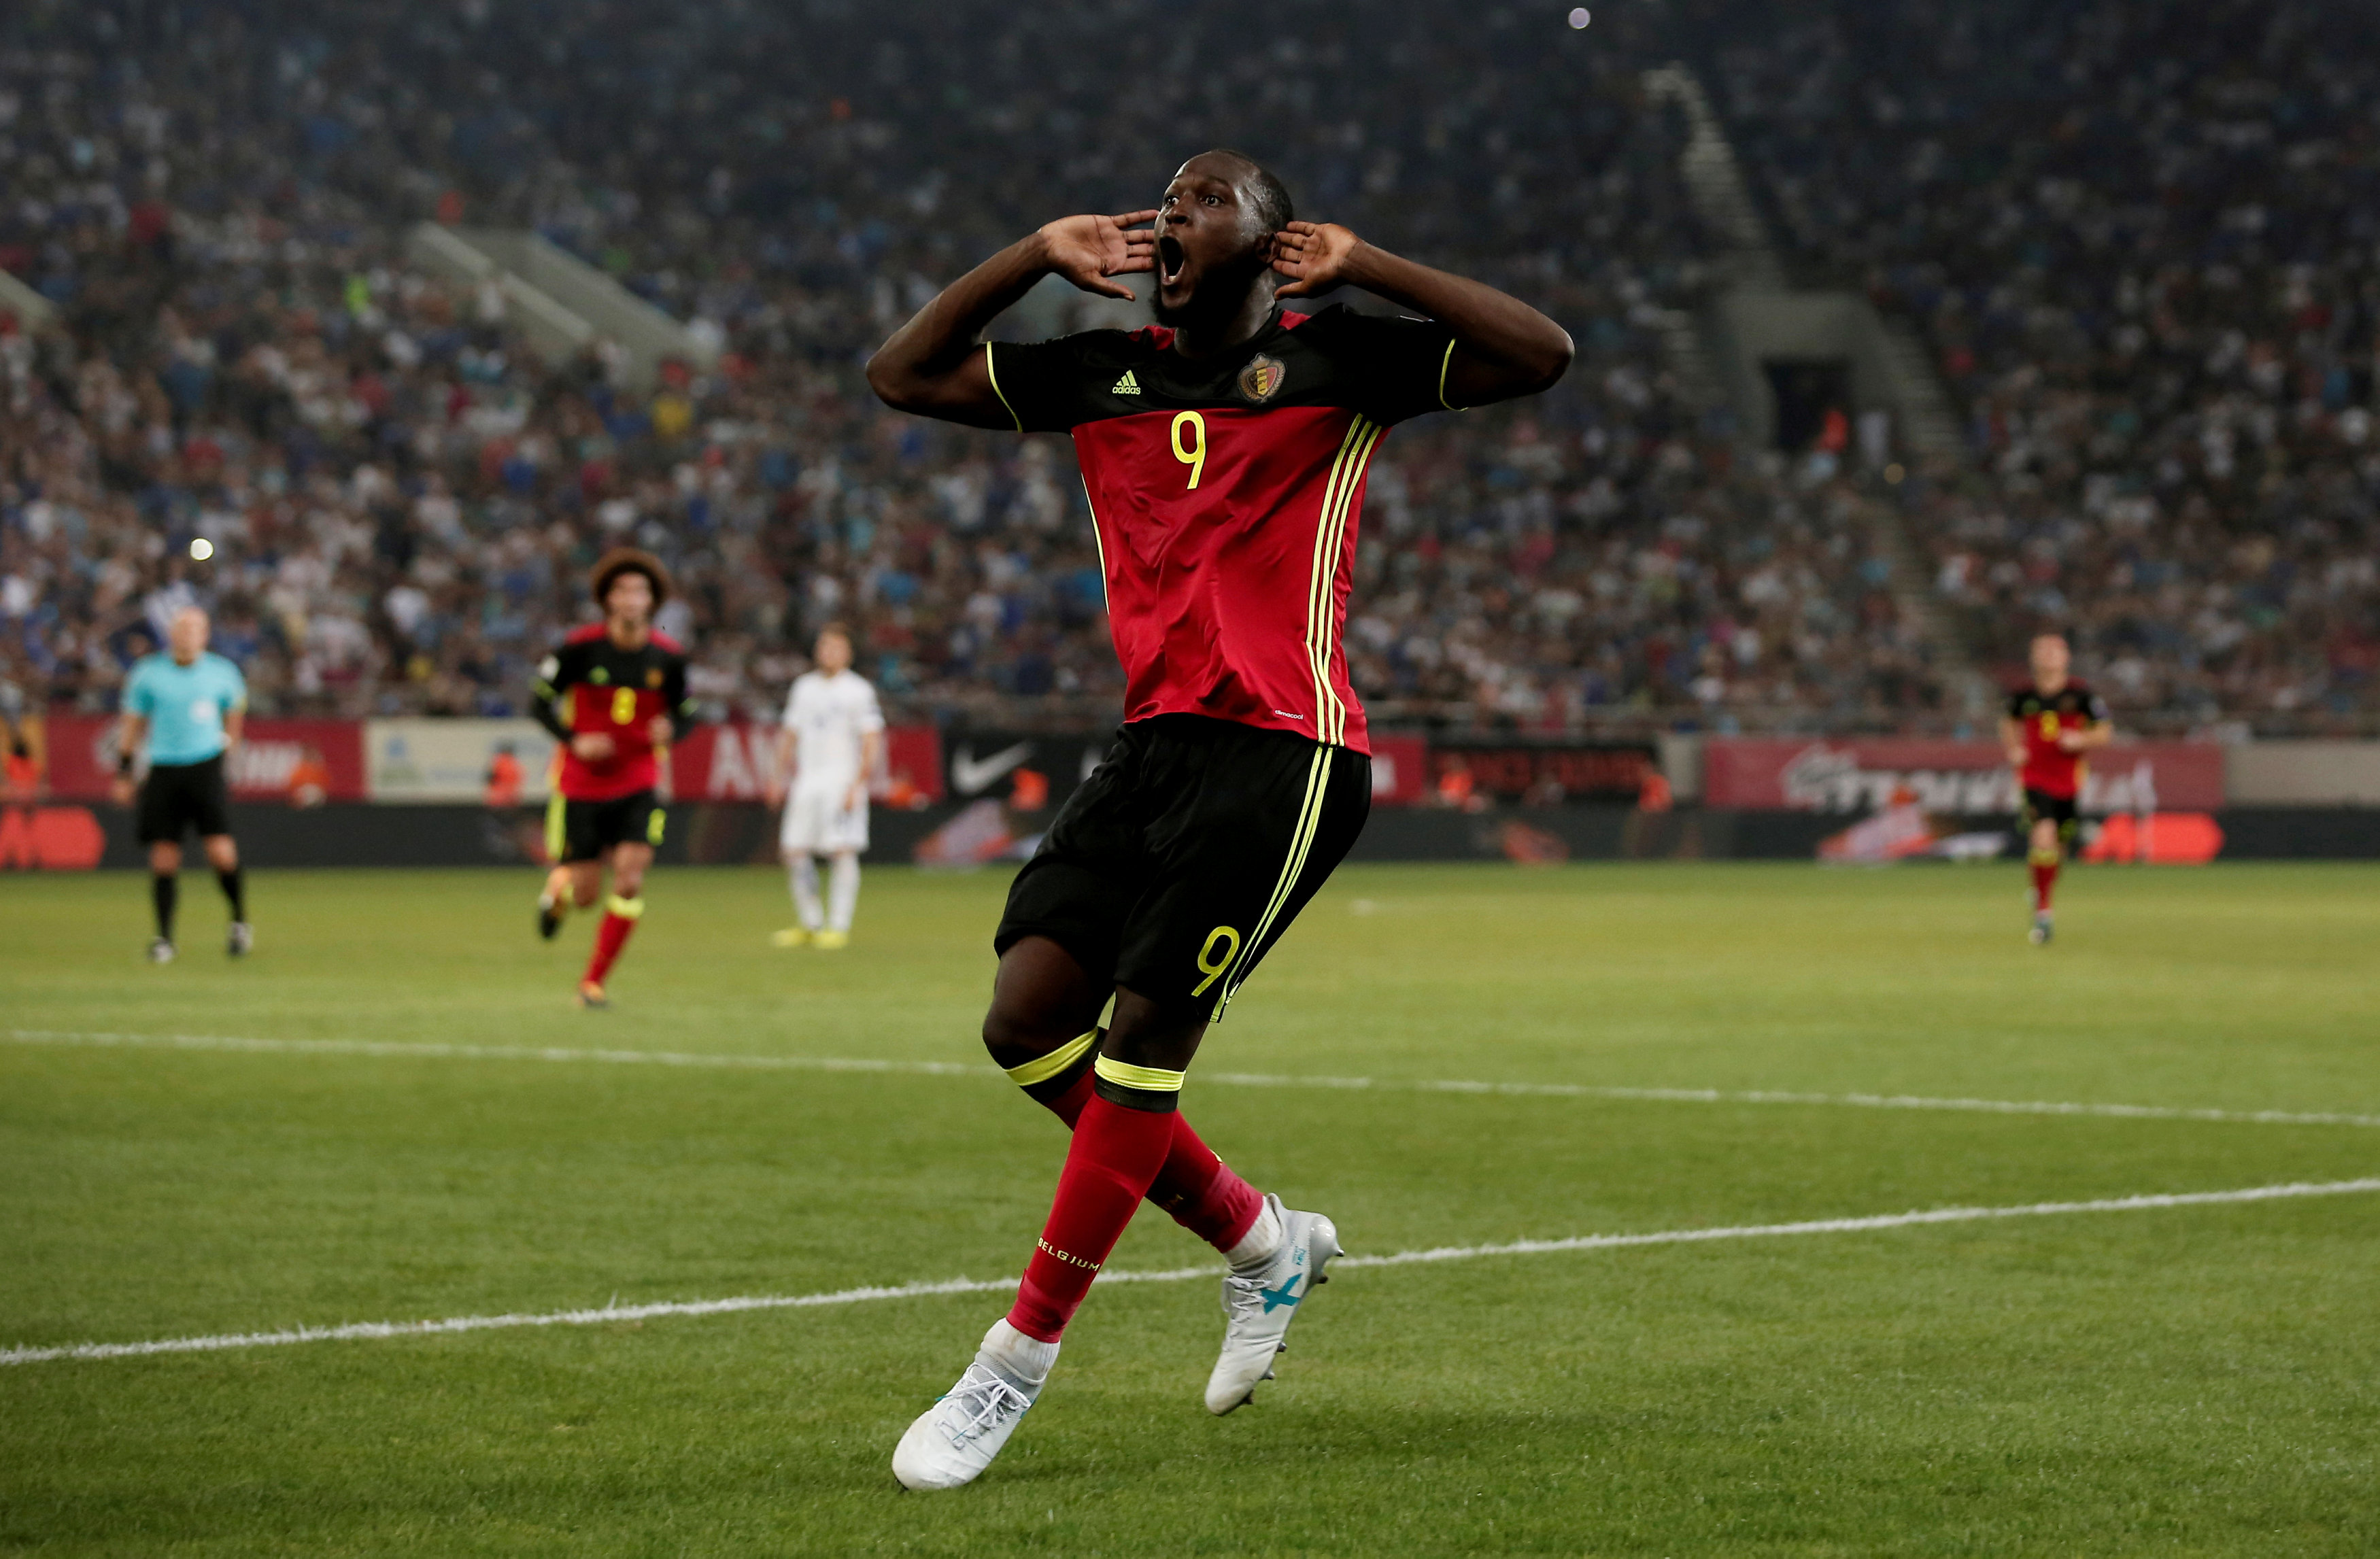 Niềm vui của Lukaku sau khi ghi bàn thắng nâng tỉ số lên 2-1 cho tuyển Bỉ. Ảnh: REUTERS